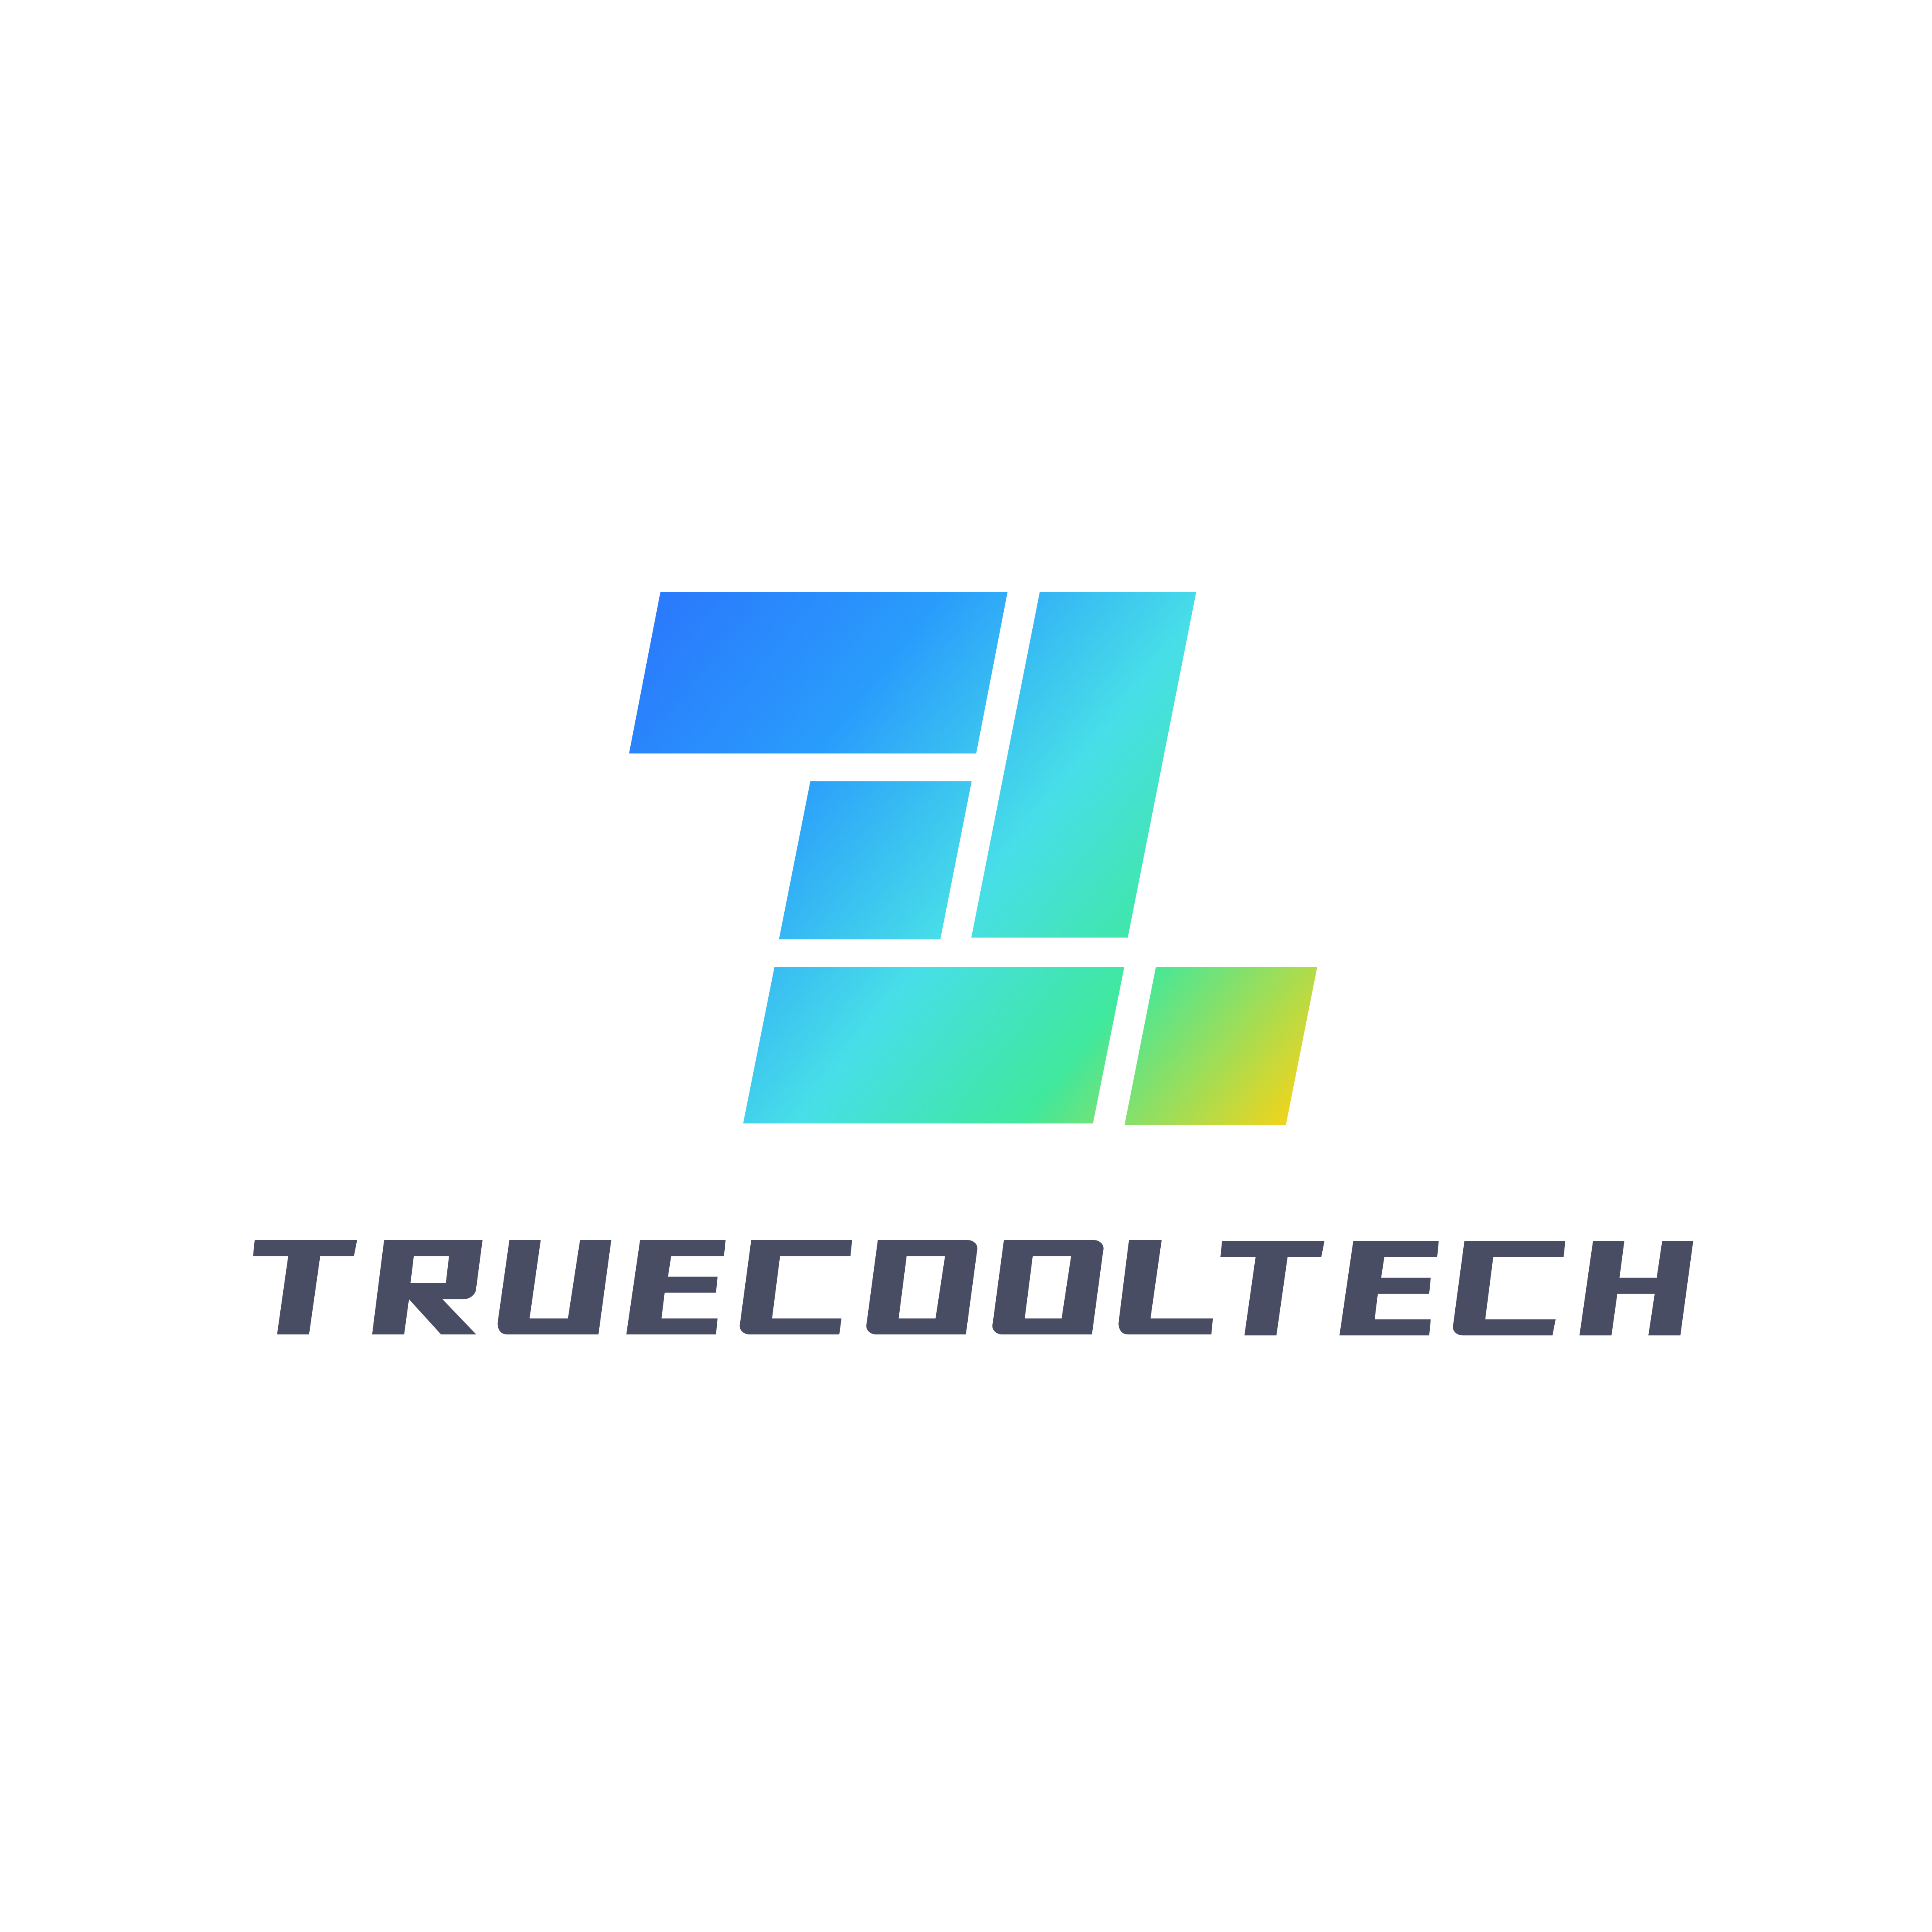 Truecooltech Logo